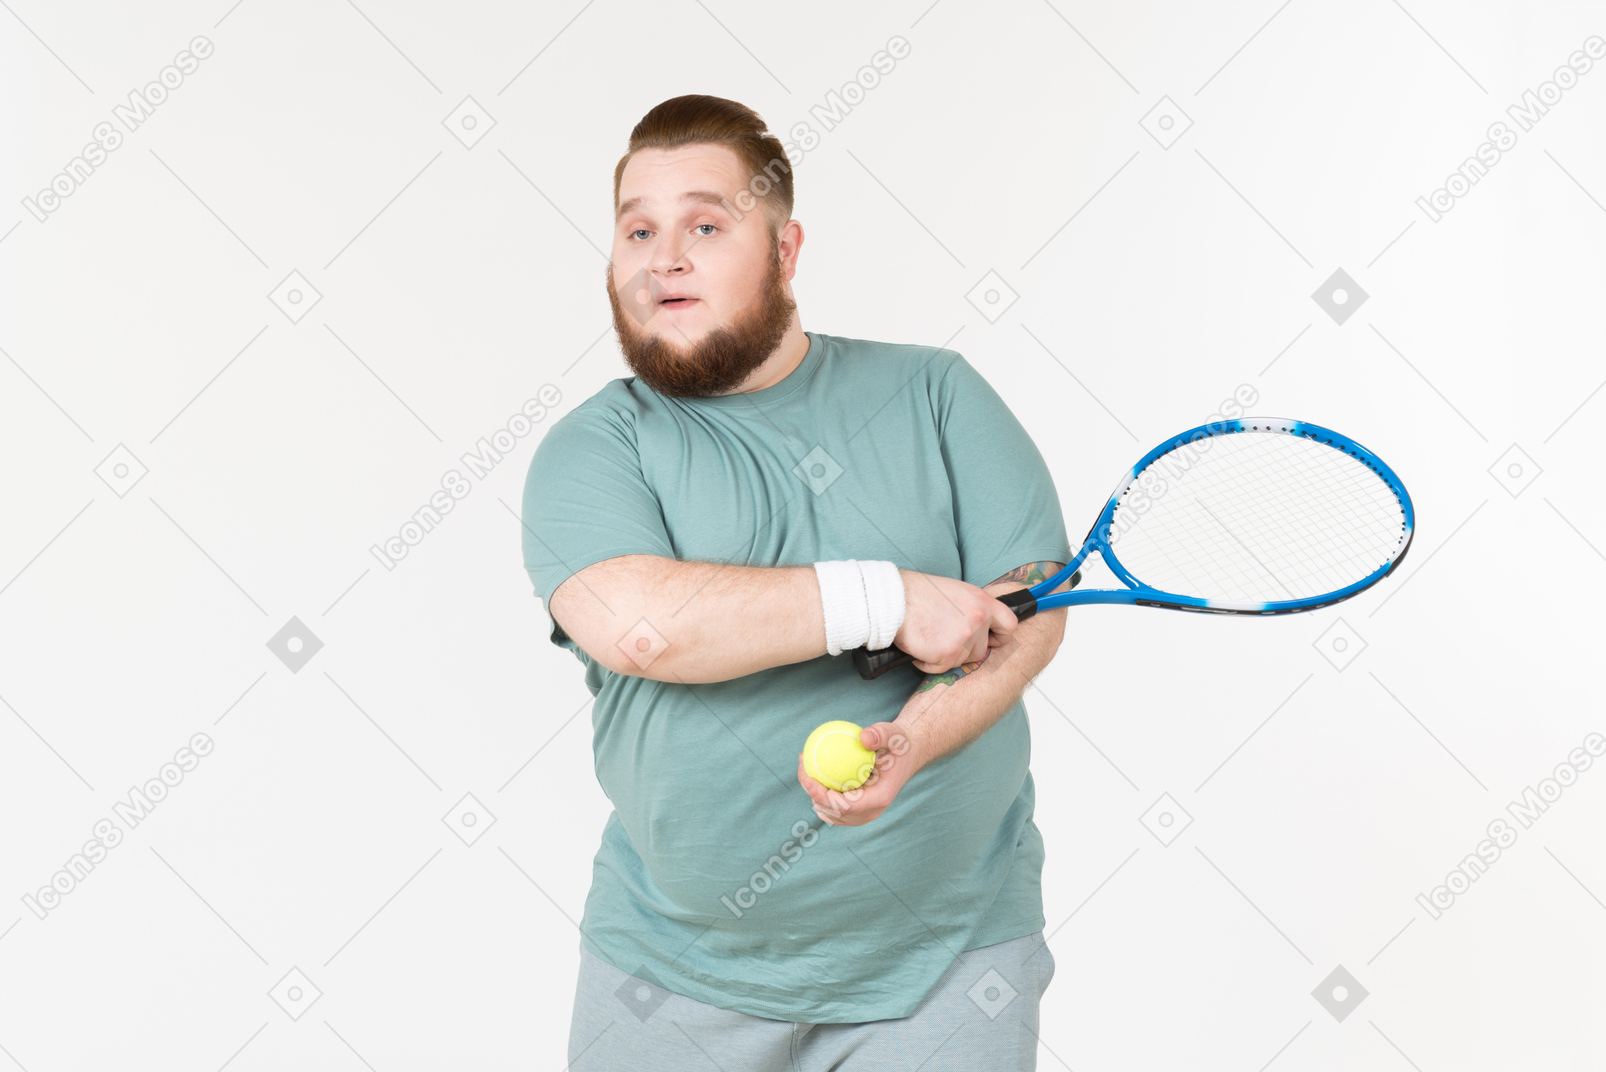 Ragazzo grosso in abiti sportivi con racchetta da tennis e palla da tennis